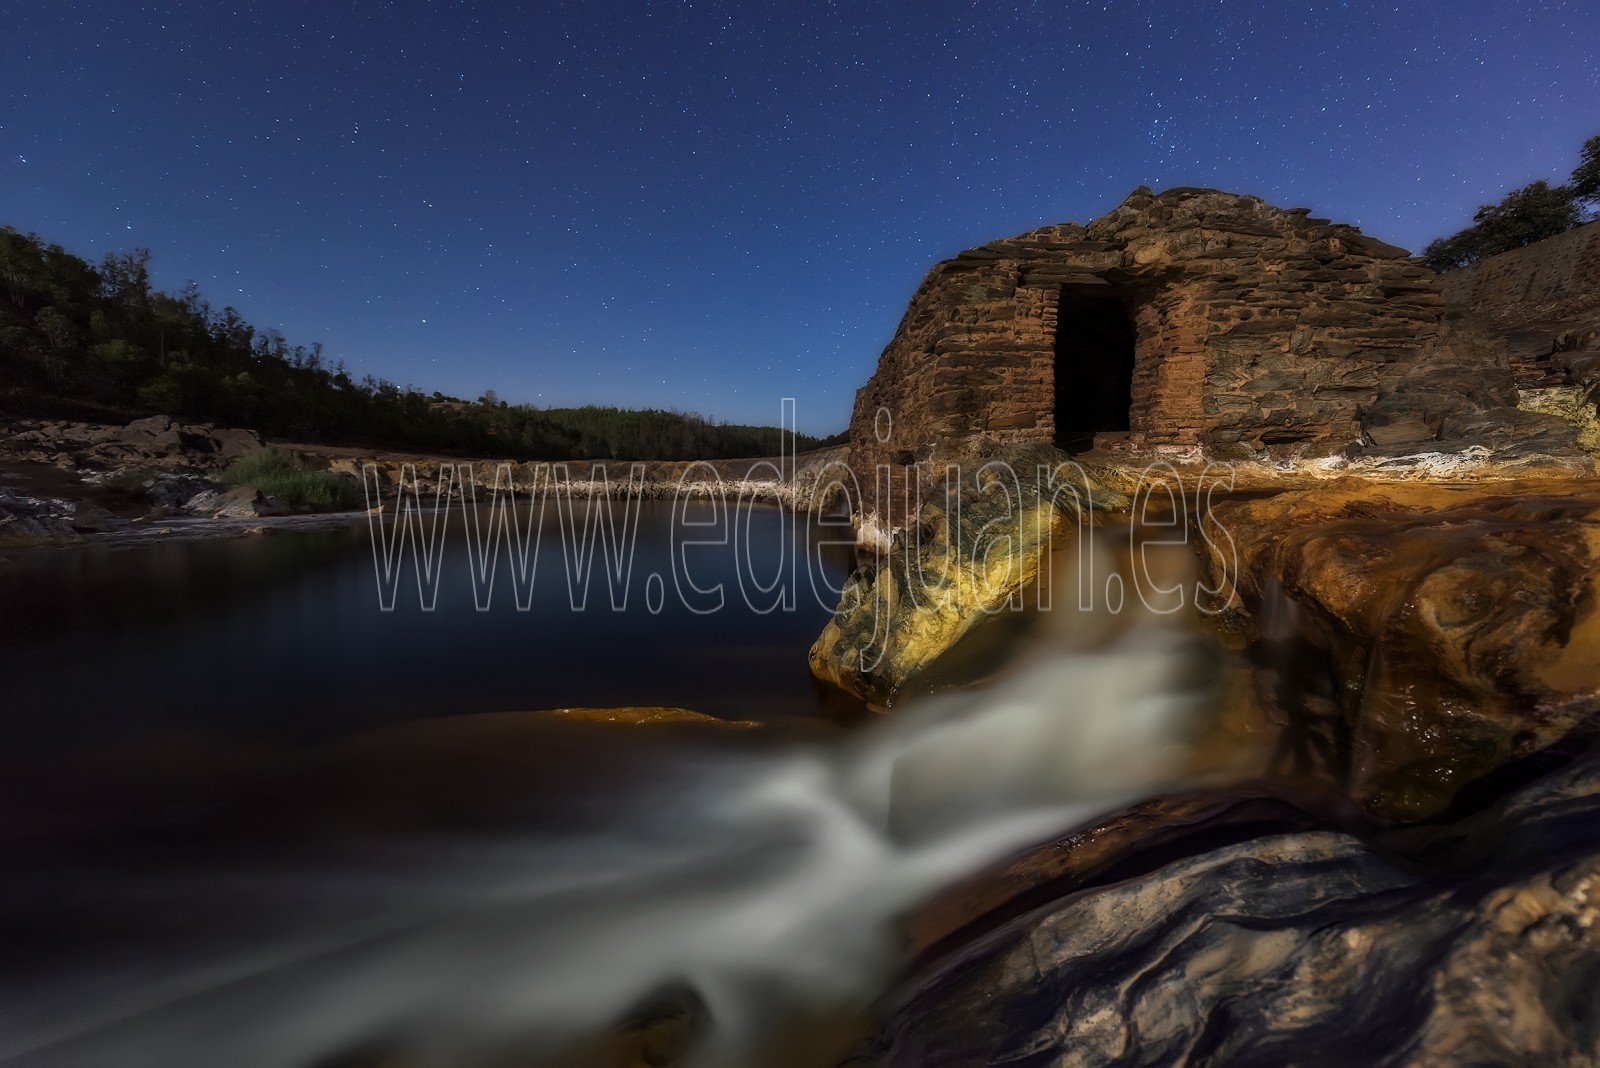 Fotografía nocturna de un molino cerca del Puente de Gadea, un salto de agua en el Río tinto, comarca minera de Huelva. La Palma del Condado